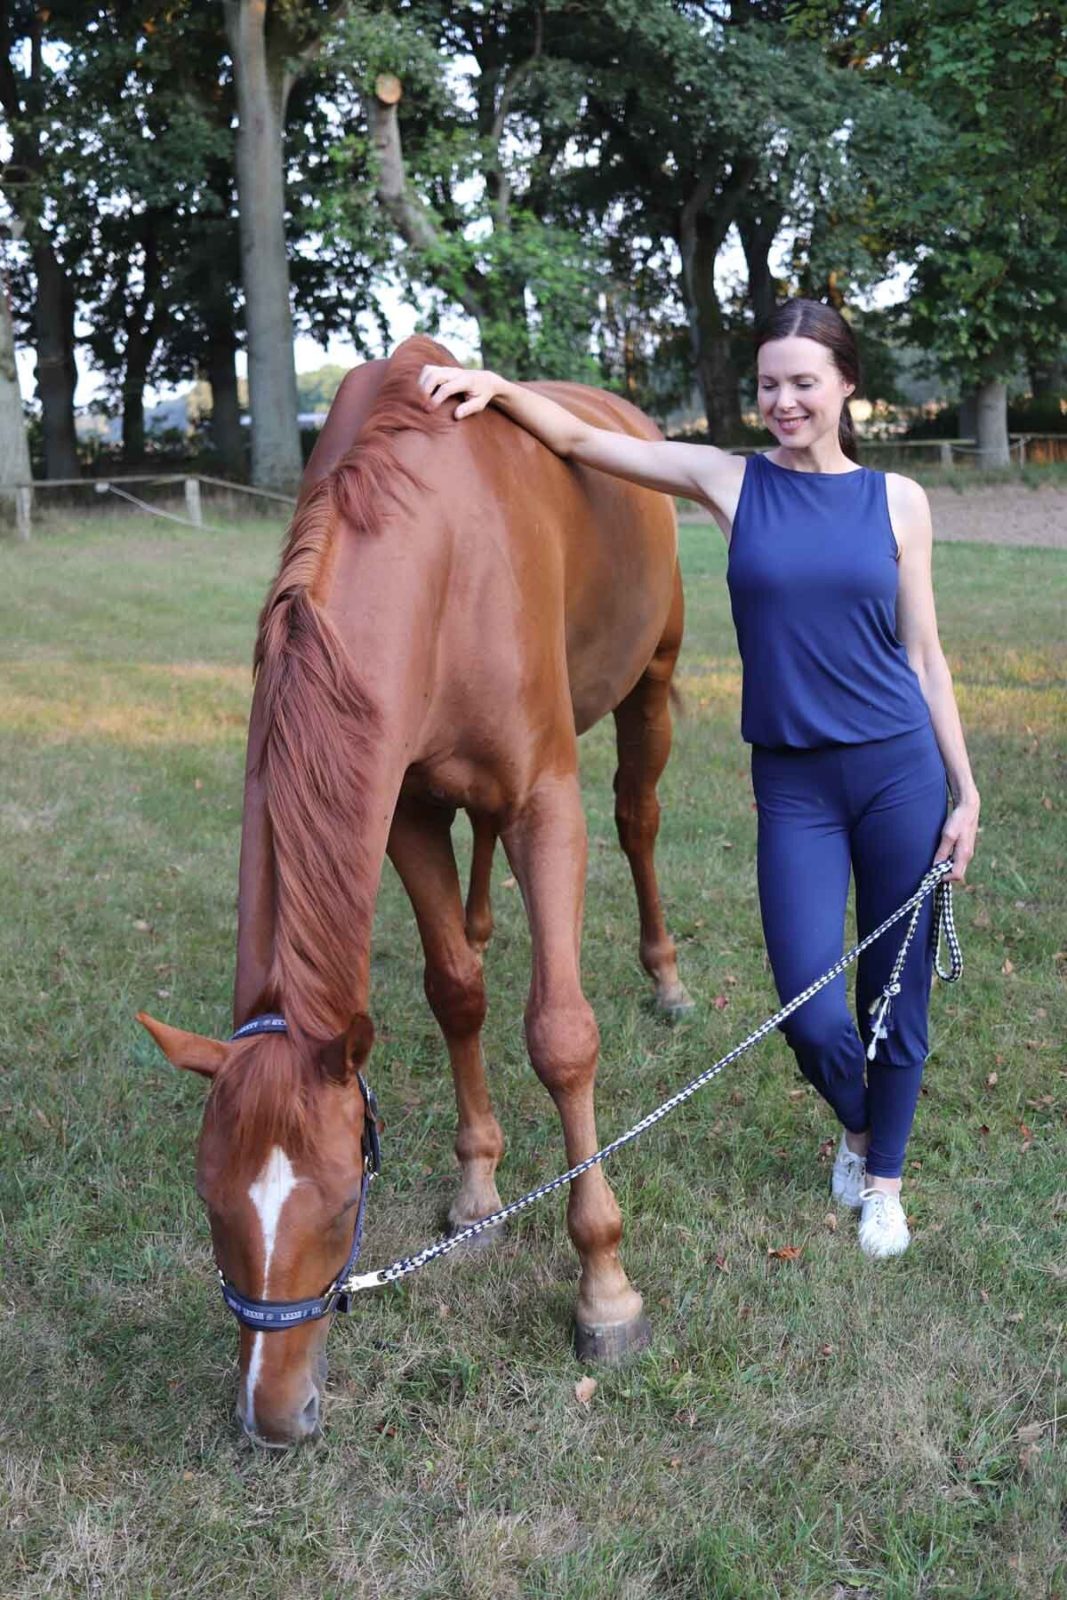 Eine Frau steht in einem Yoga-Overall auf einem Rasen neben einem braunen Pferd und hält es zärtlich an Führstrick und Schulter.